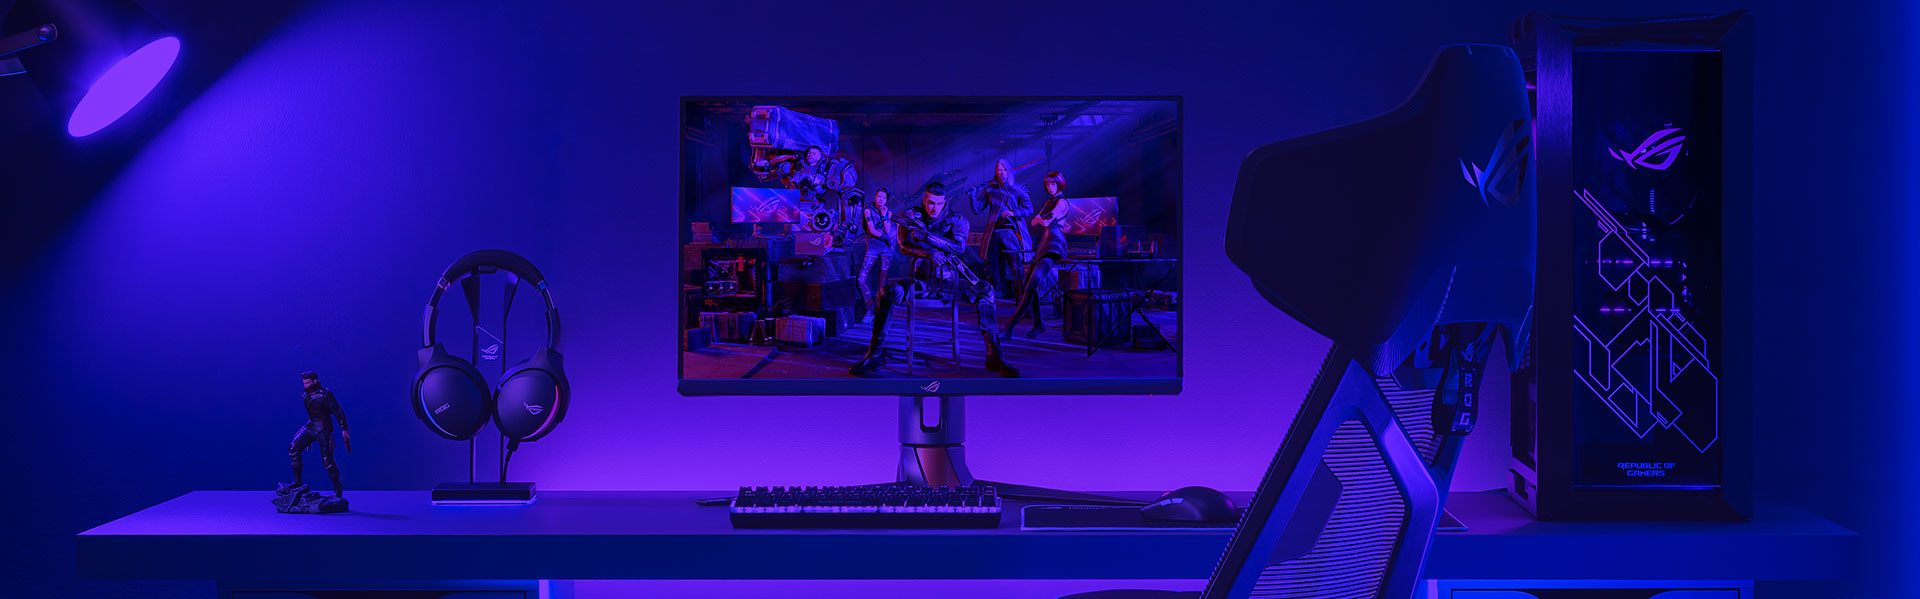 Ігровий комп’ютер із монітором ROG, однією клавіатурою та мишею, а також гарнітурою на робочому столі